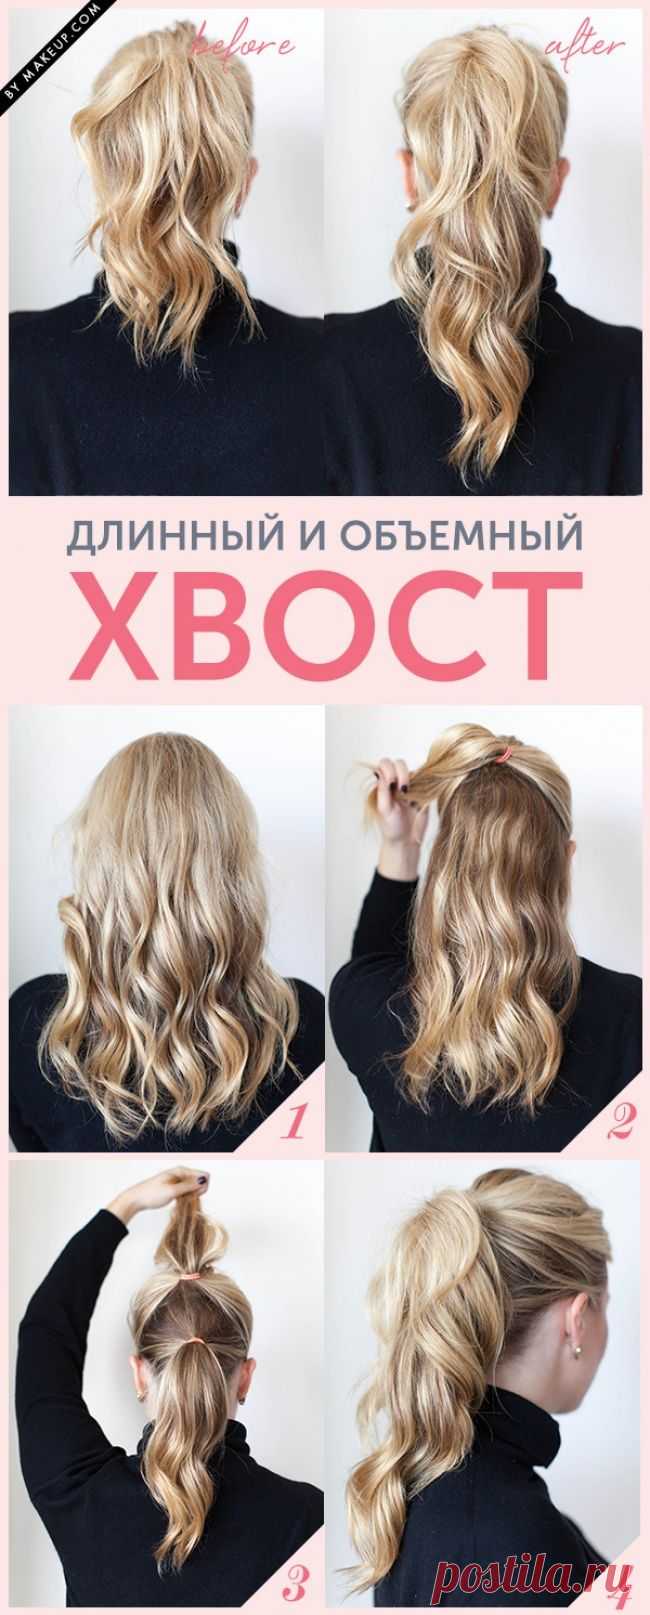 11 хитростей, чтобы волосы выглядели идеально